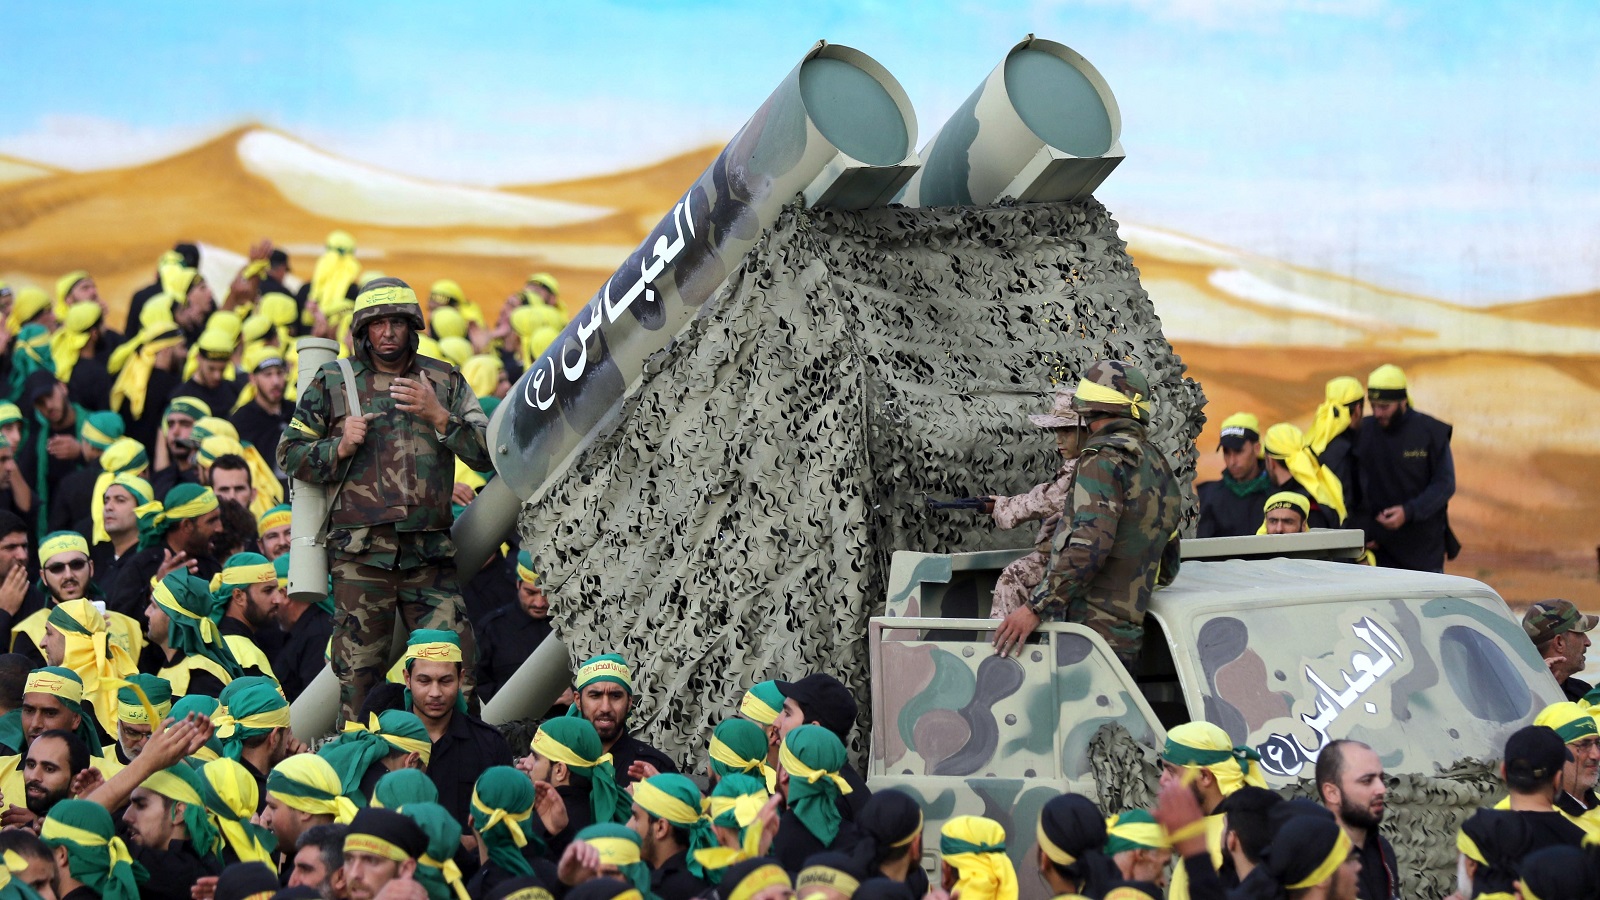 اقتصاد لبنان وحدوده وصواريخ حزب الله: المقايضة أو العقاب